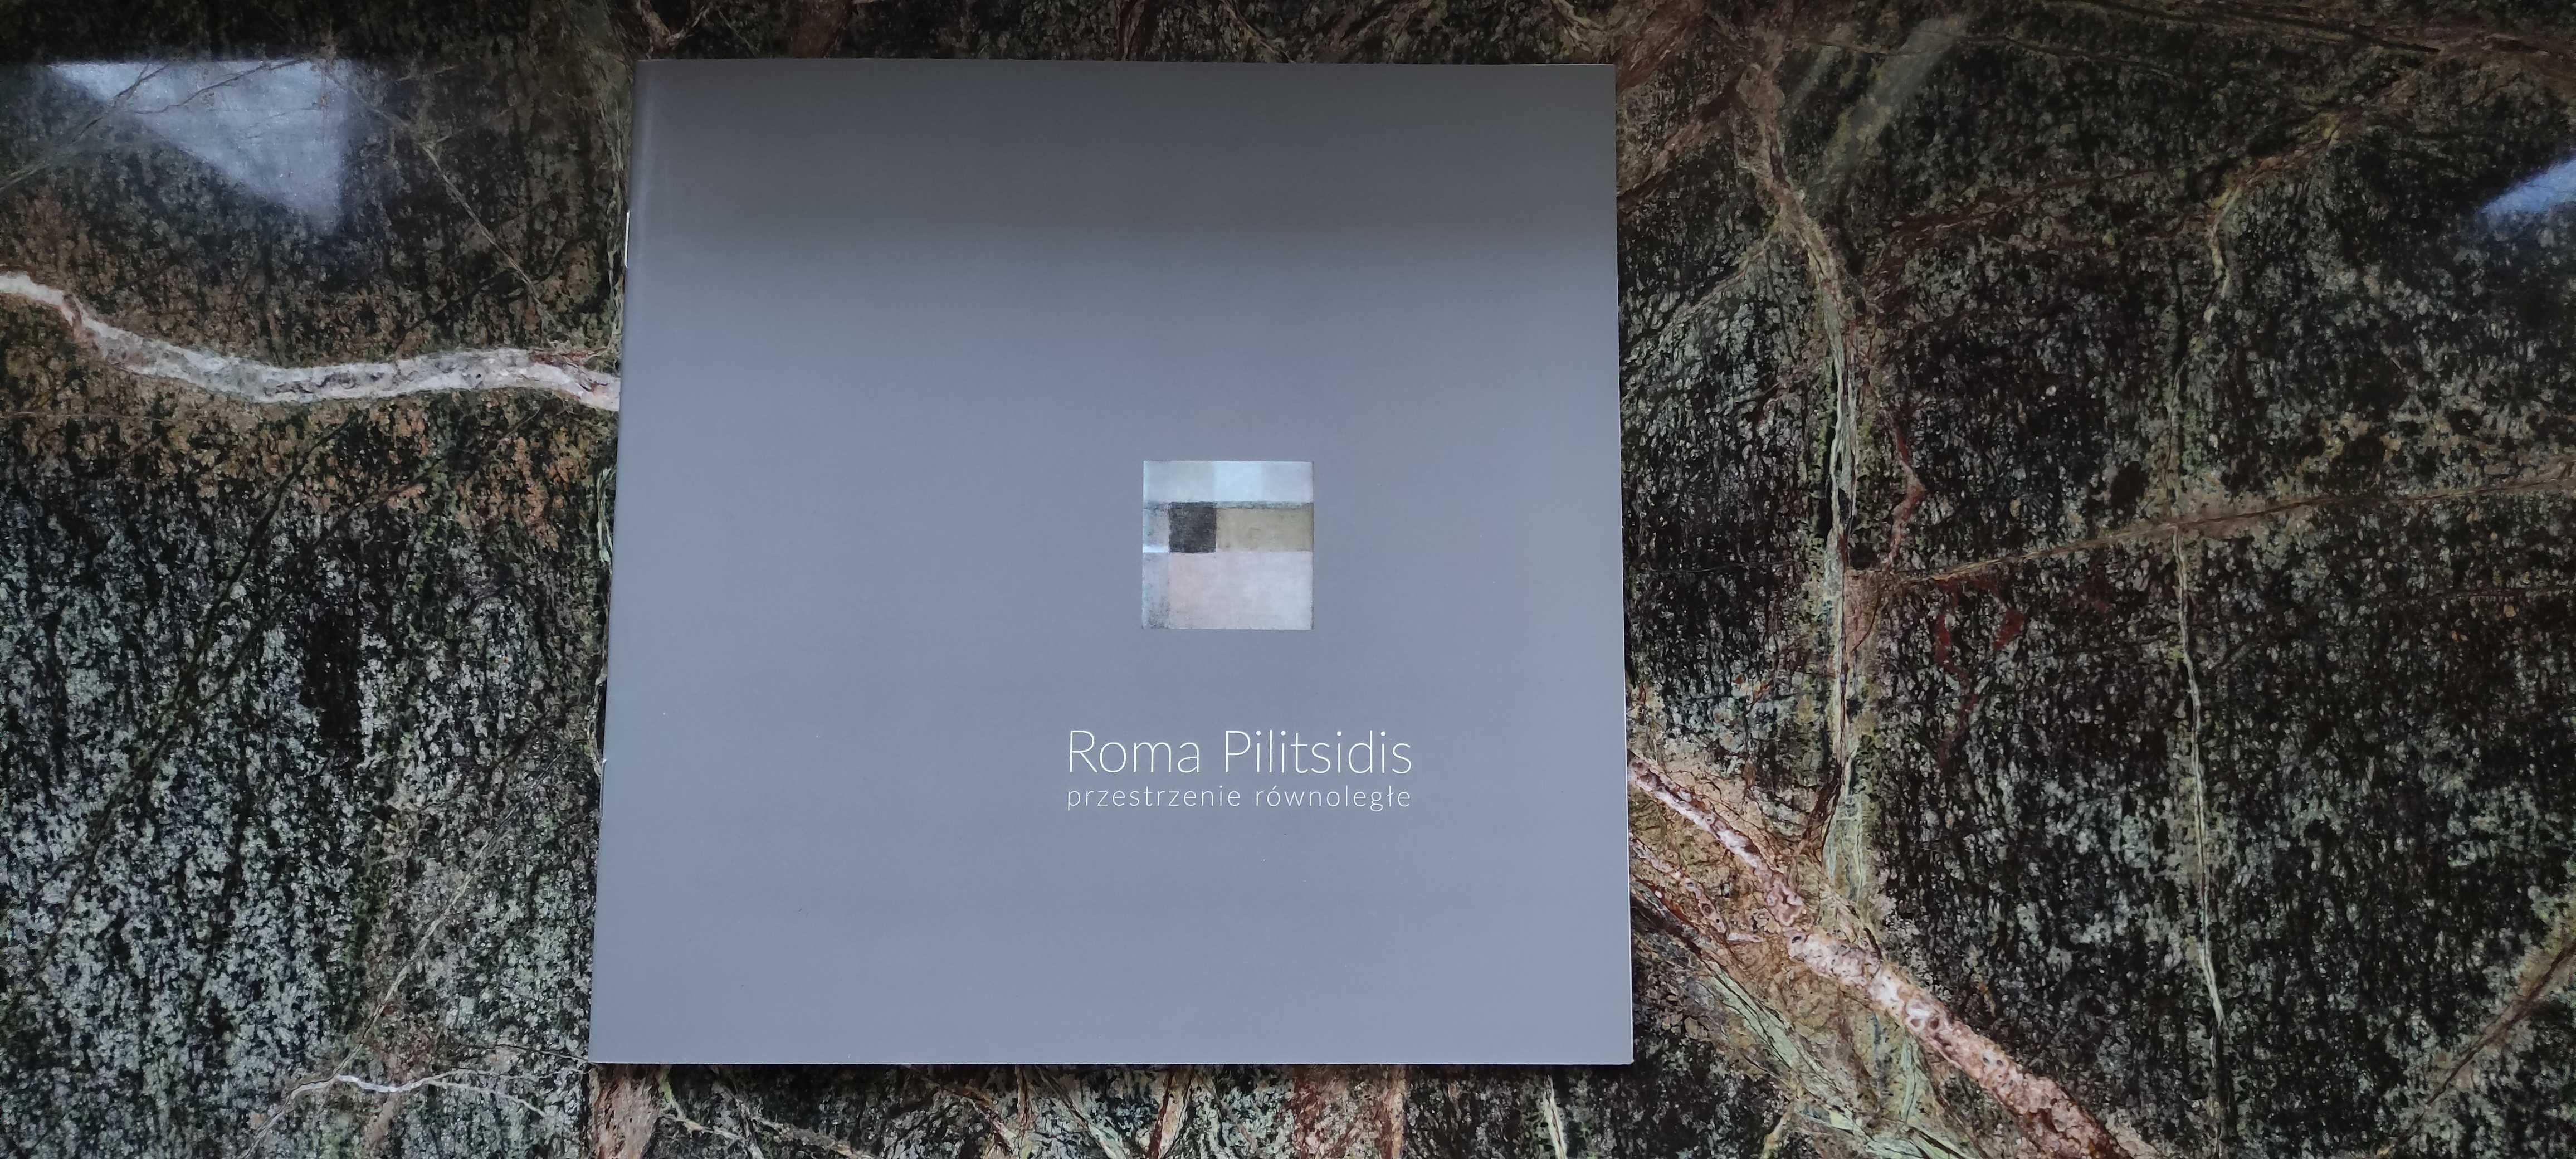 Roma Pilitsidis - Przestrzenie Równoległe